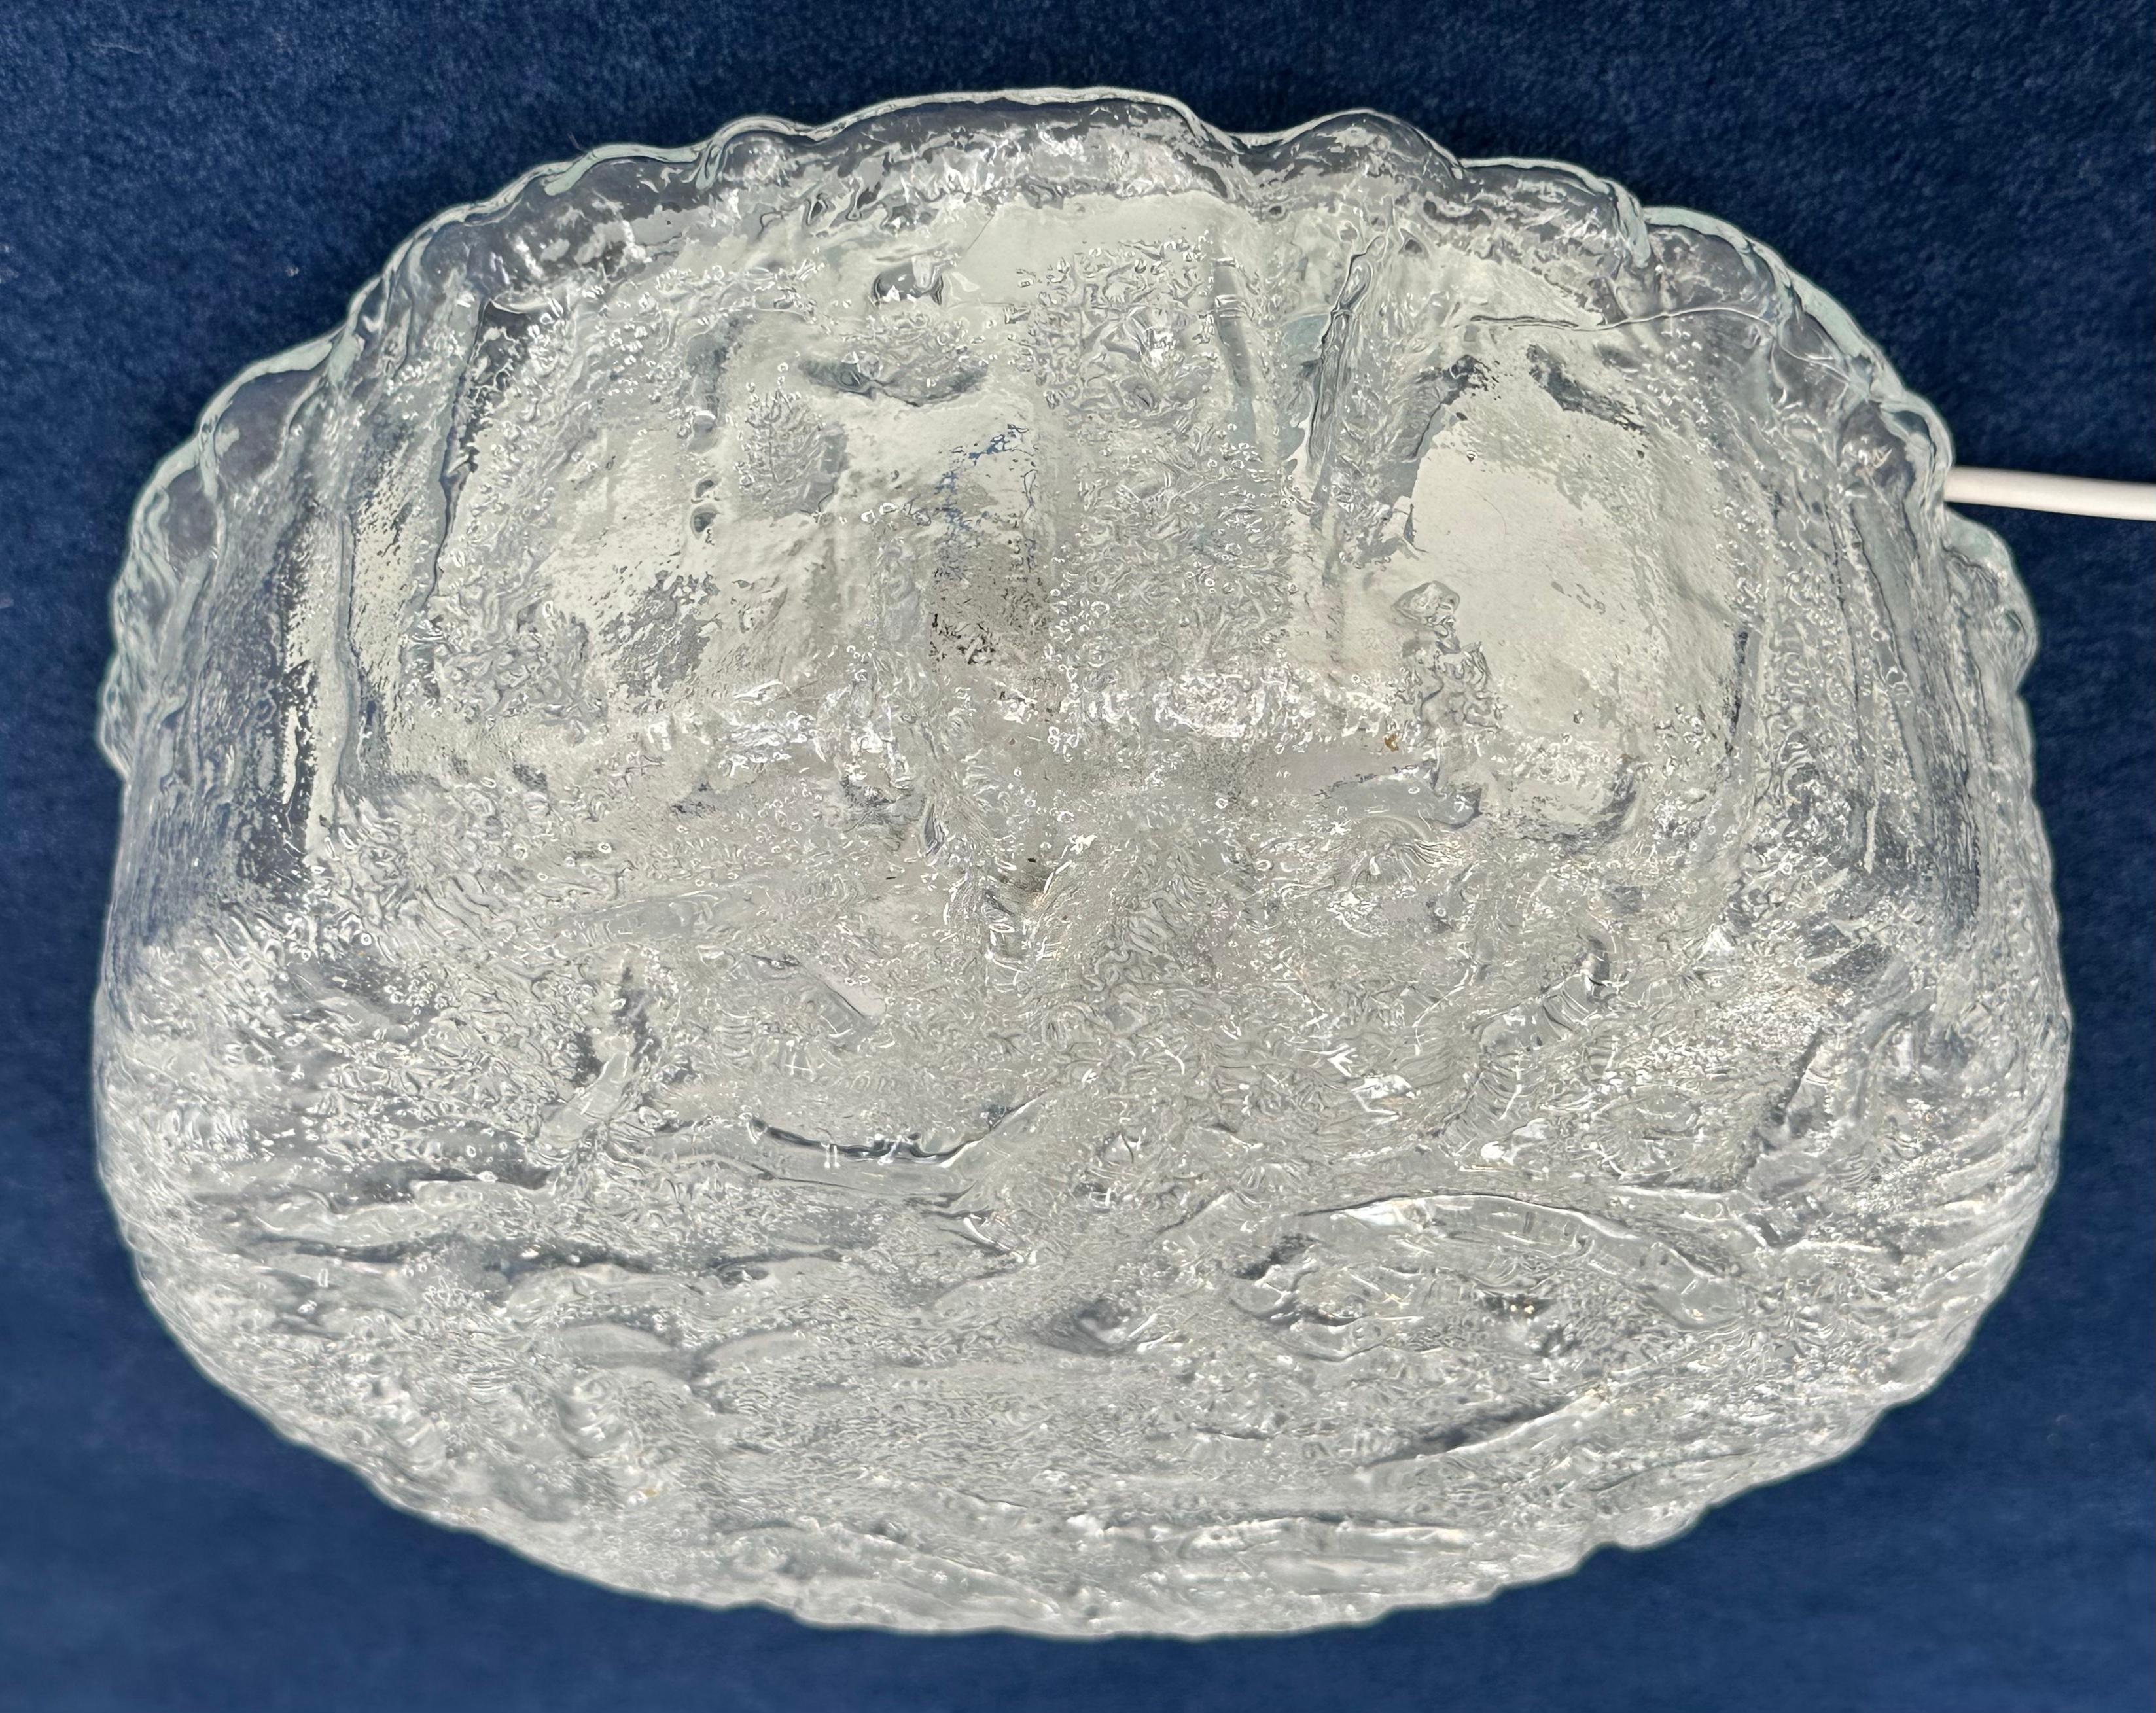 1970s German Glashütte Limburg Iced Glass Flush Mount Ceiling or Wall Light For Sale 2